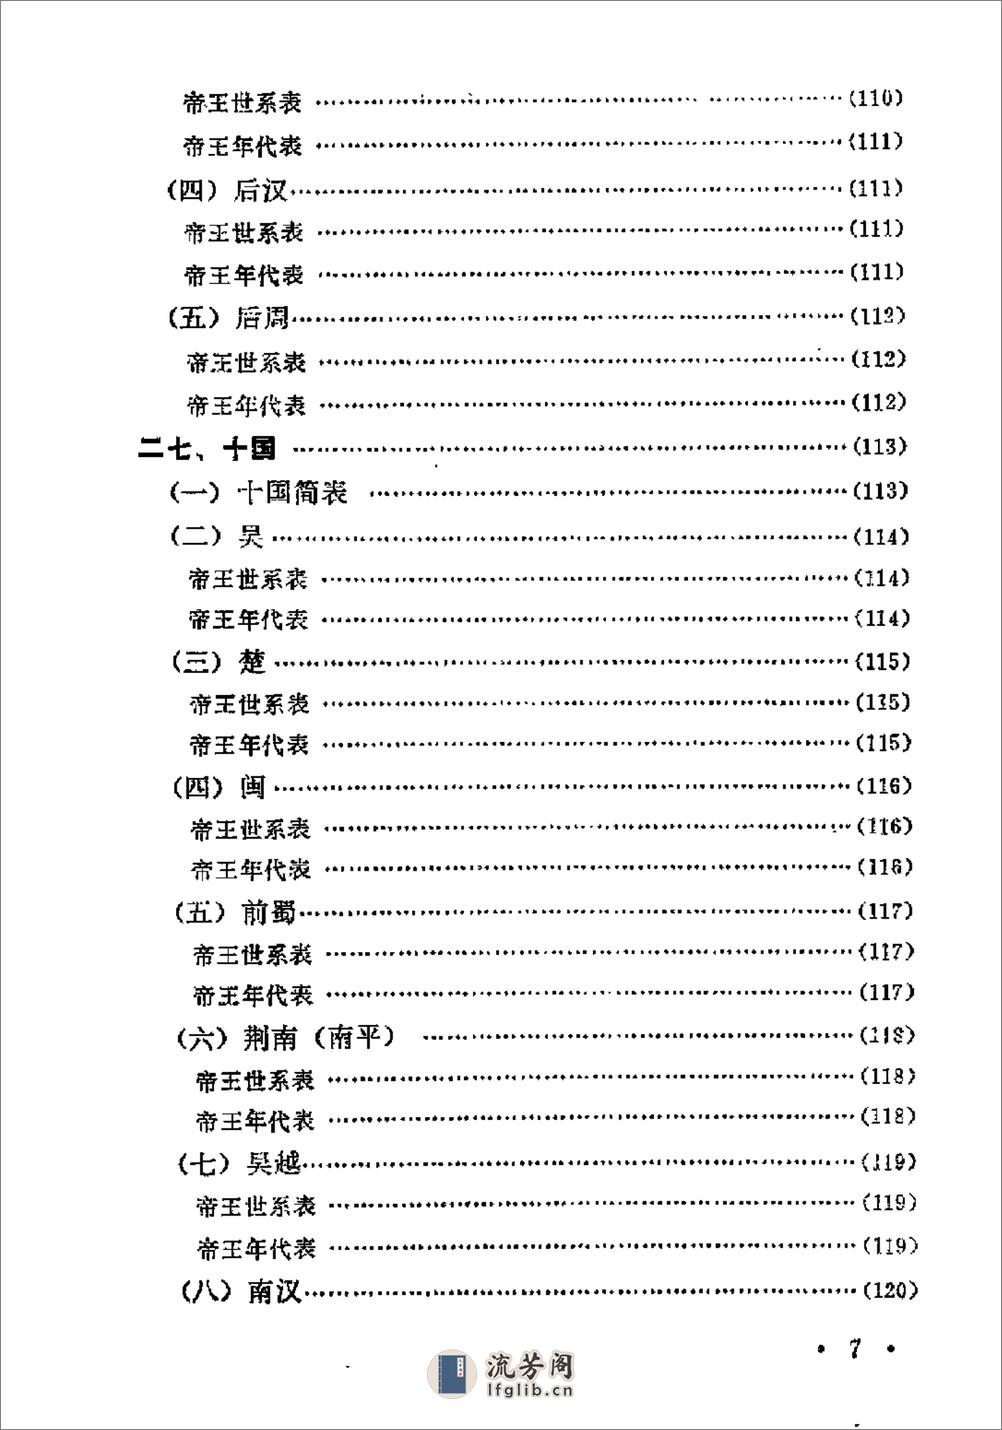 中国历史纪年简表·陈作良·中央党校1985 - 第10页预览图